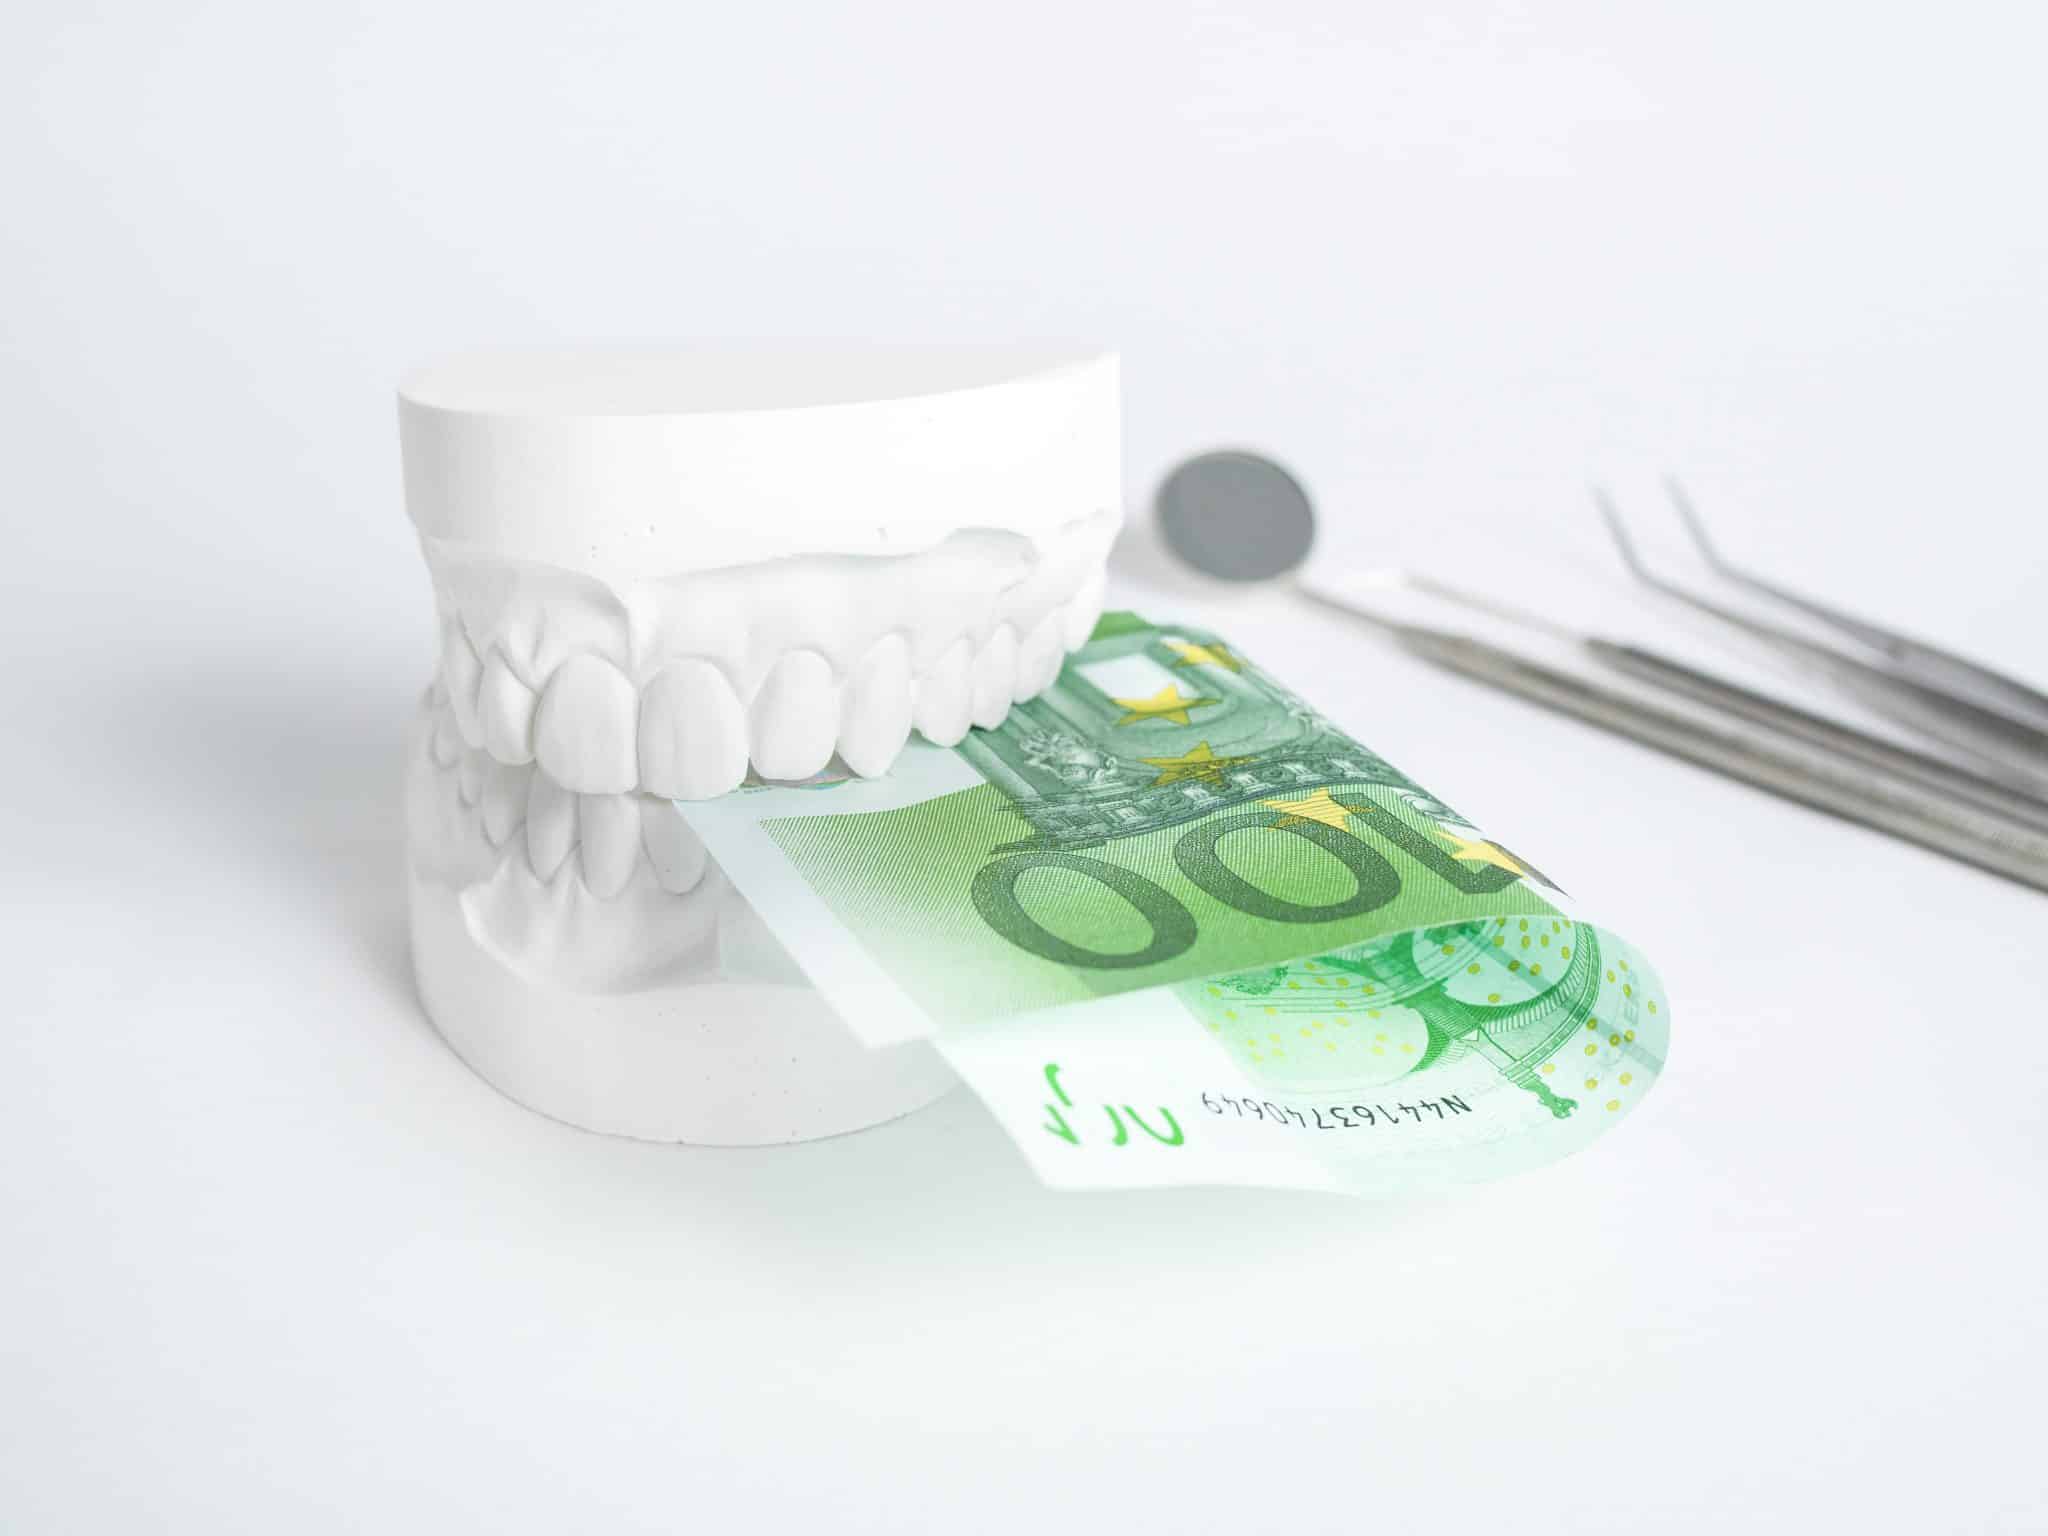 Zahnabdruck, in dem ein Hundert-Euro-Schein steckt. Im Hintergrund zahnmedizinische Instrumente.